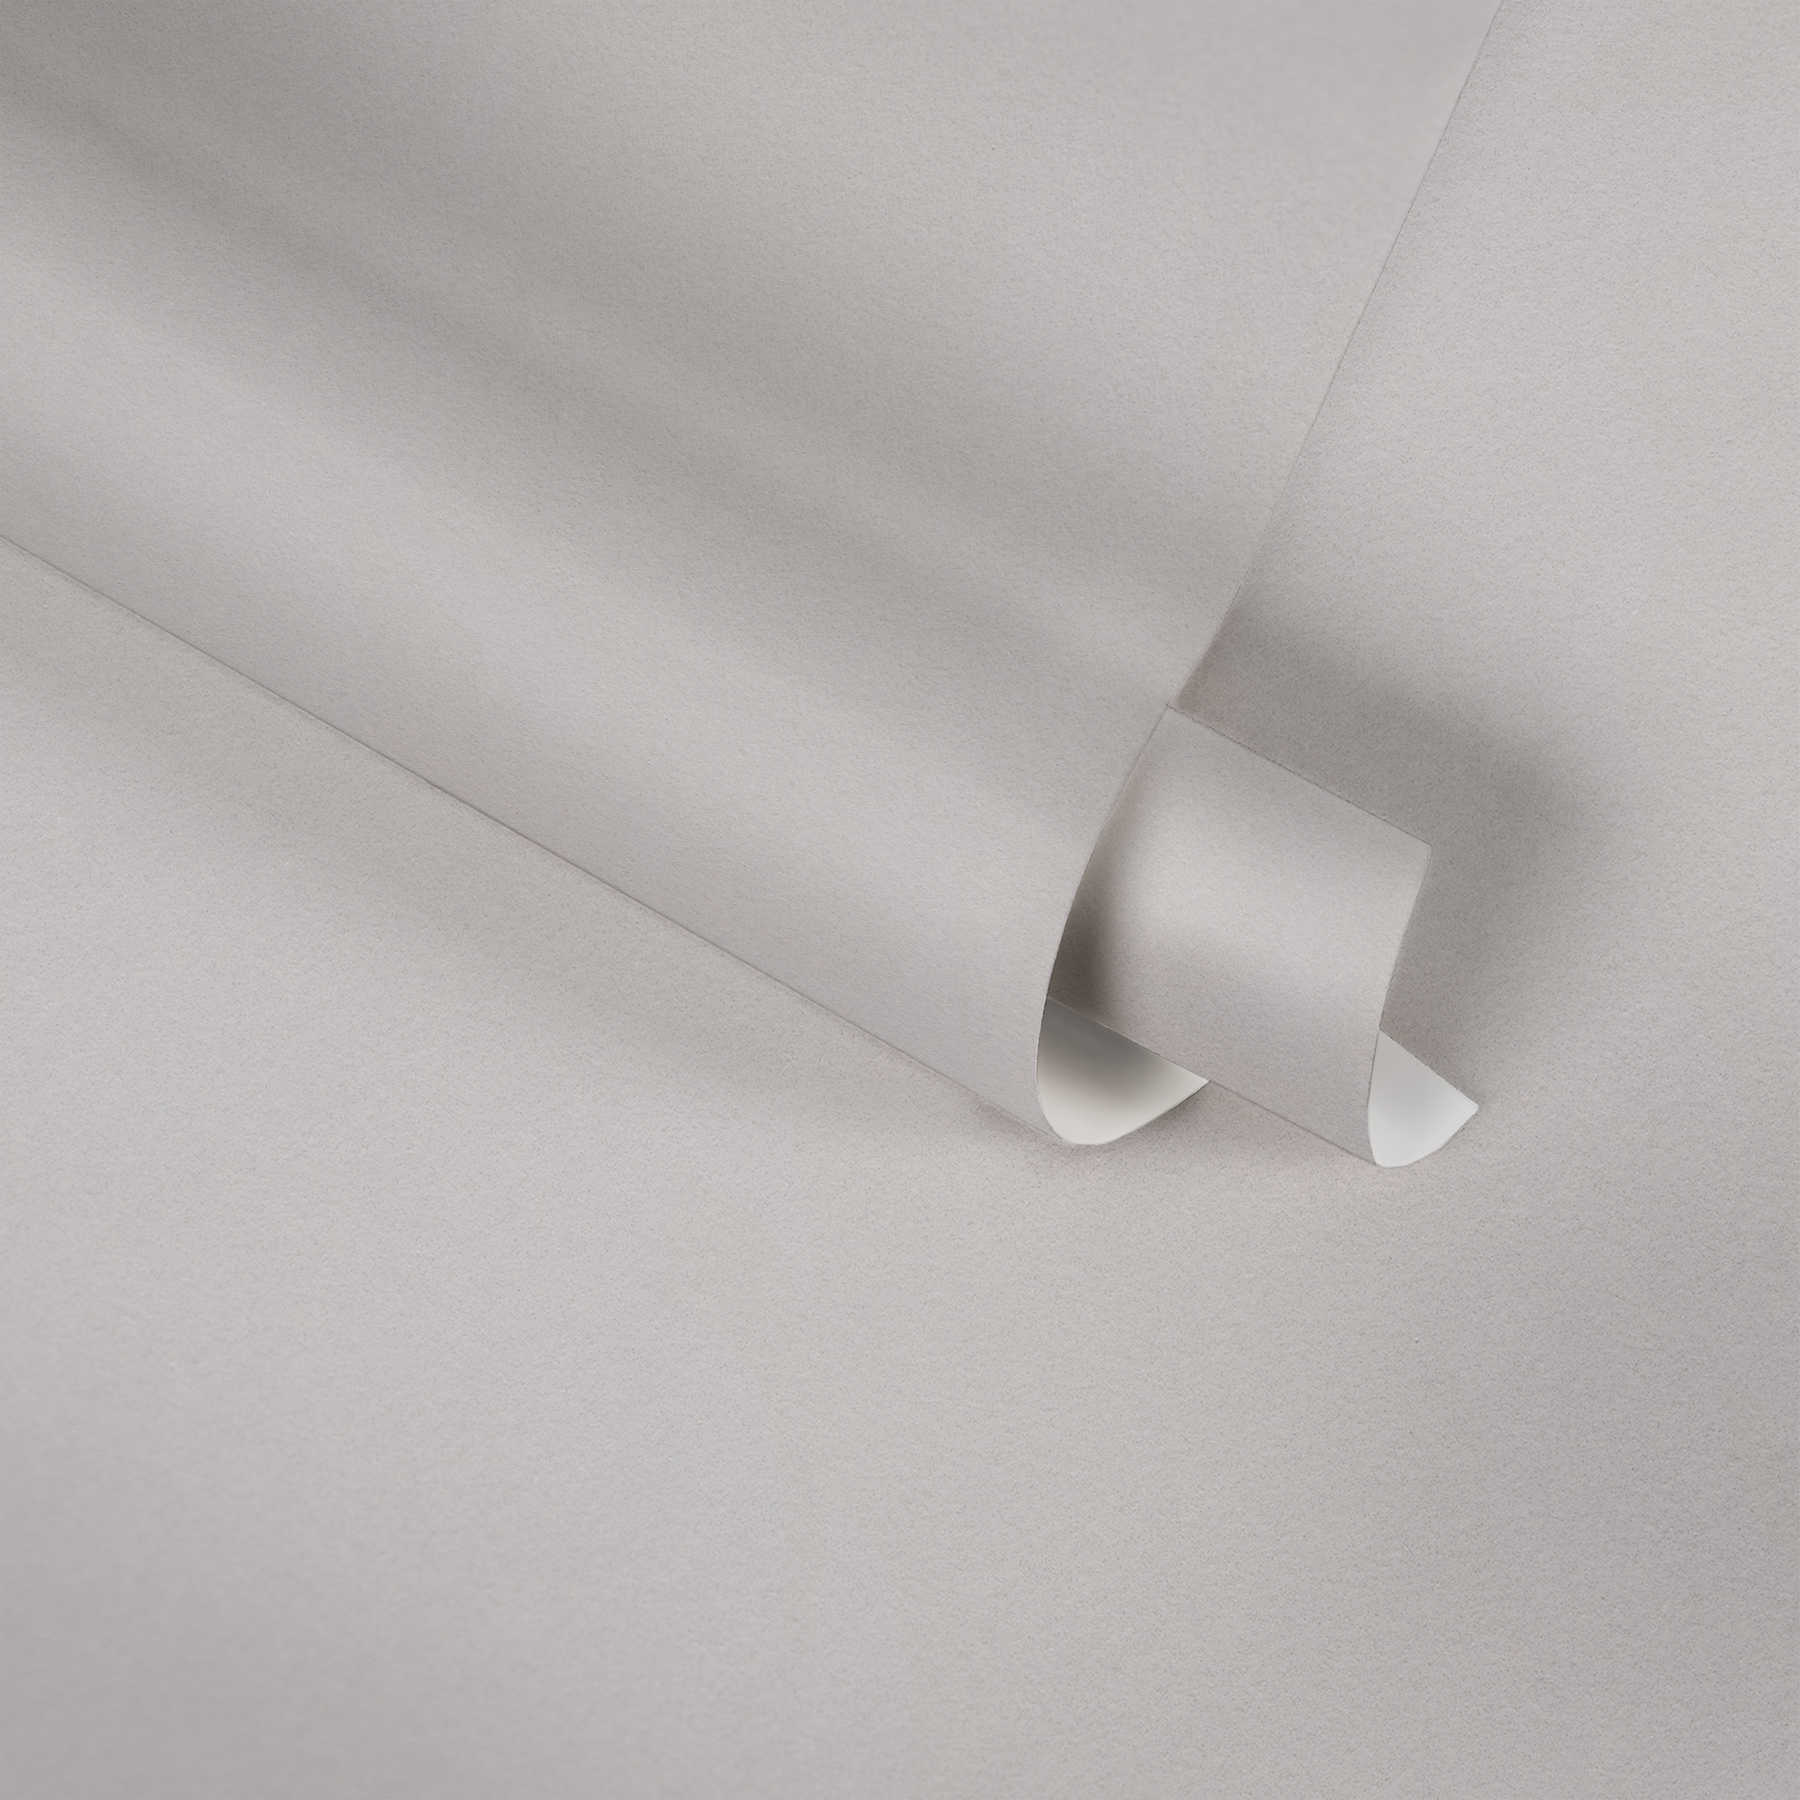             Neutraal eenheidsbehang met zijdemat oppervlak - grijs
        